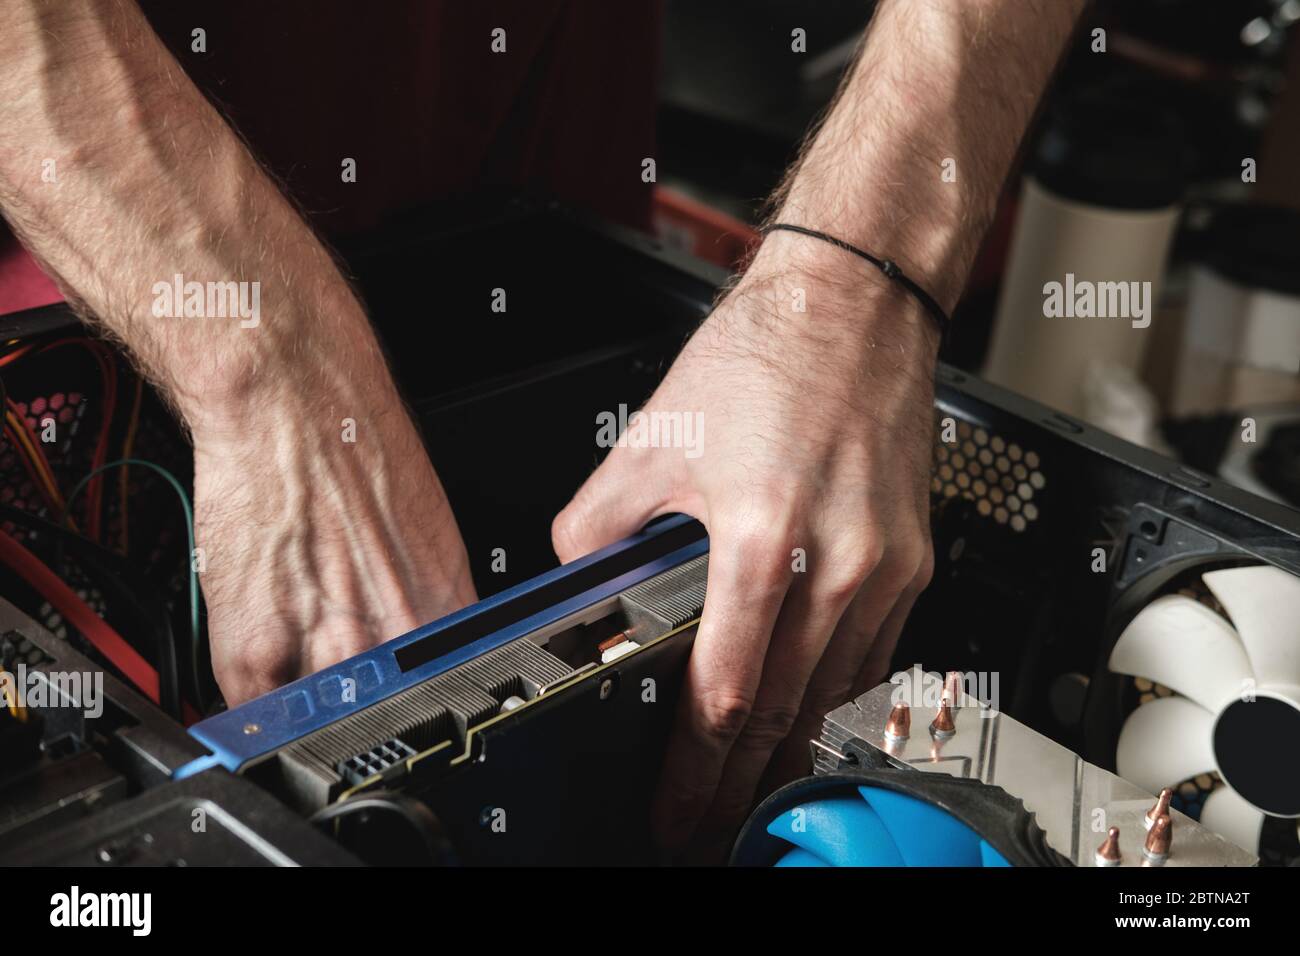 Mann repariert eine Computersystemeinheit, wechselt Teile, Grafikkarte und Festplatte. Assistent Für Computerreparaturen Stockfoto